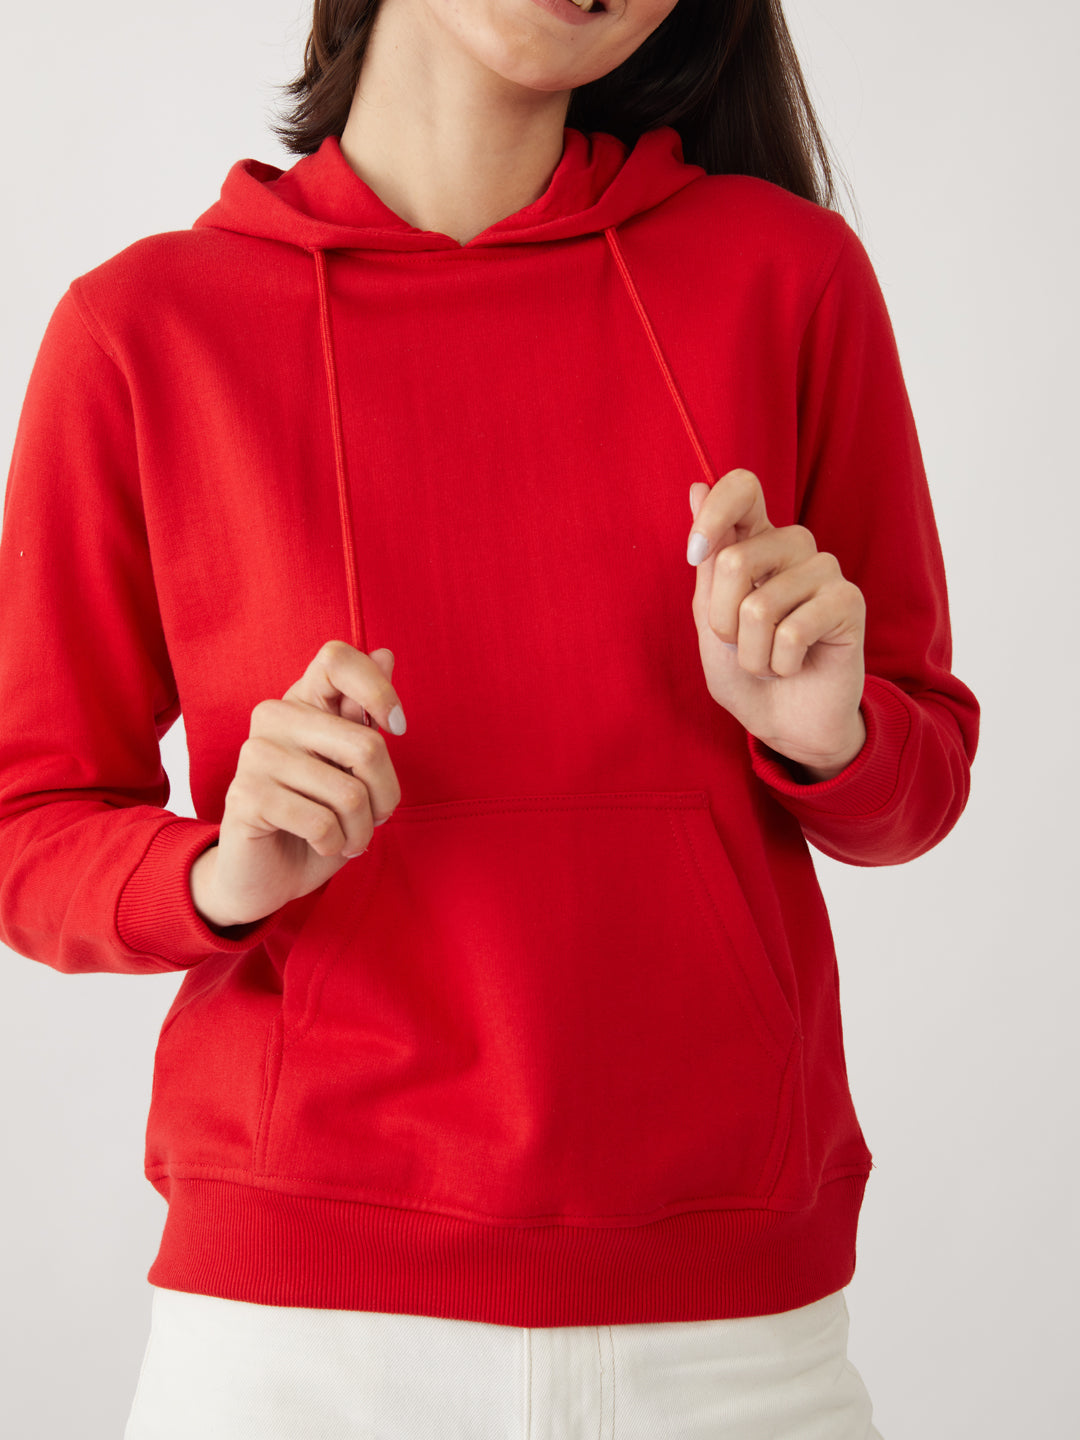 Red Solid Sweatshirt For Women